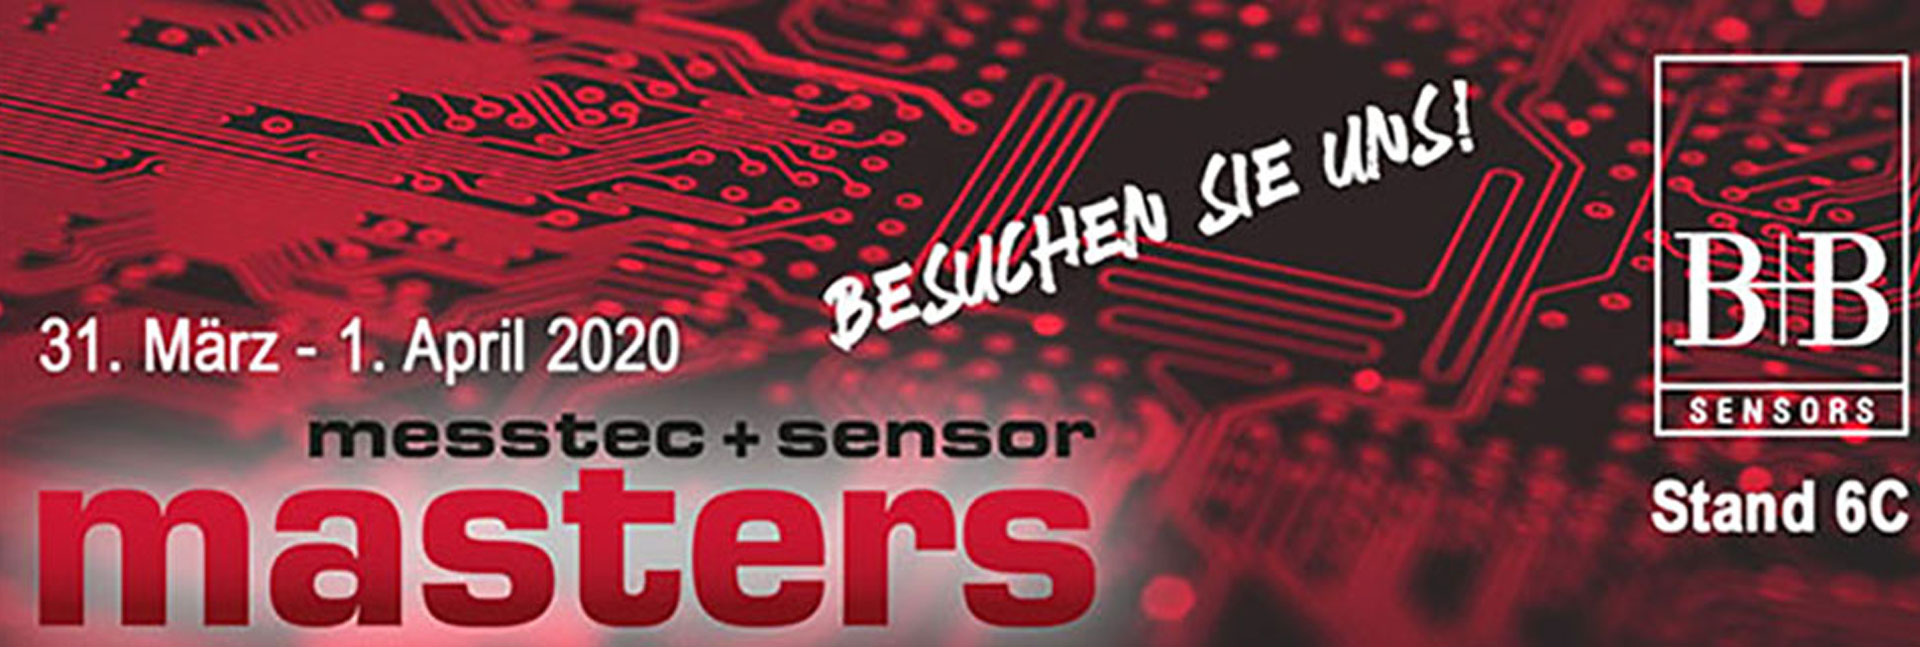 B+B Thermo-Technik Messtechnik & Sensorik | Measurement technology & sensors | Messtec